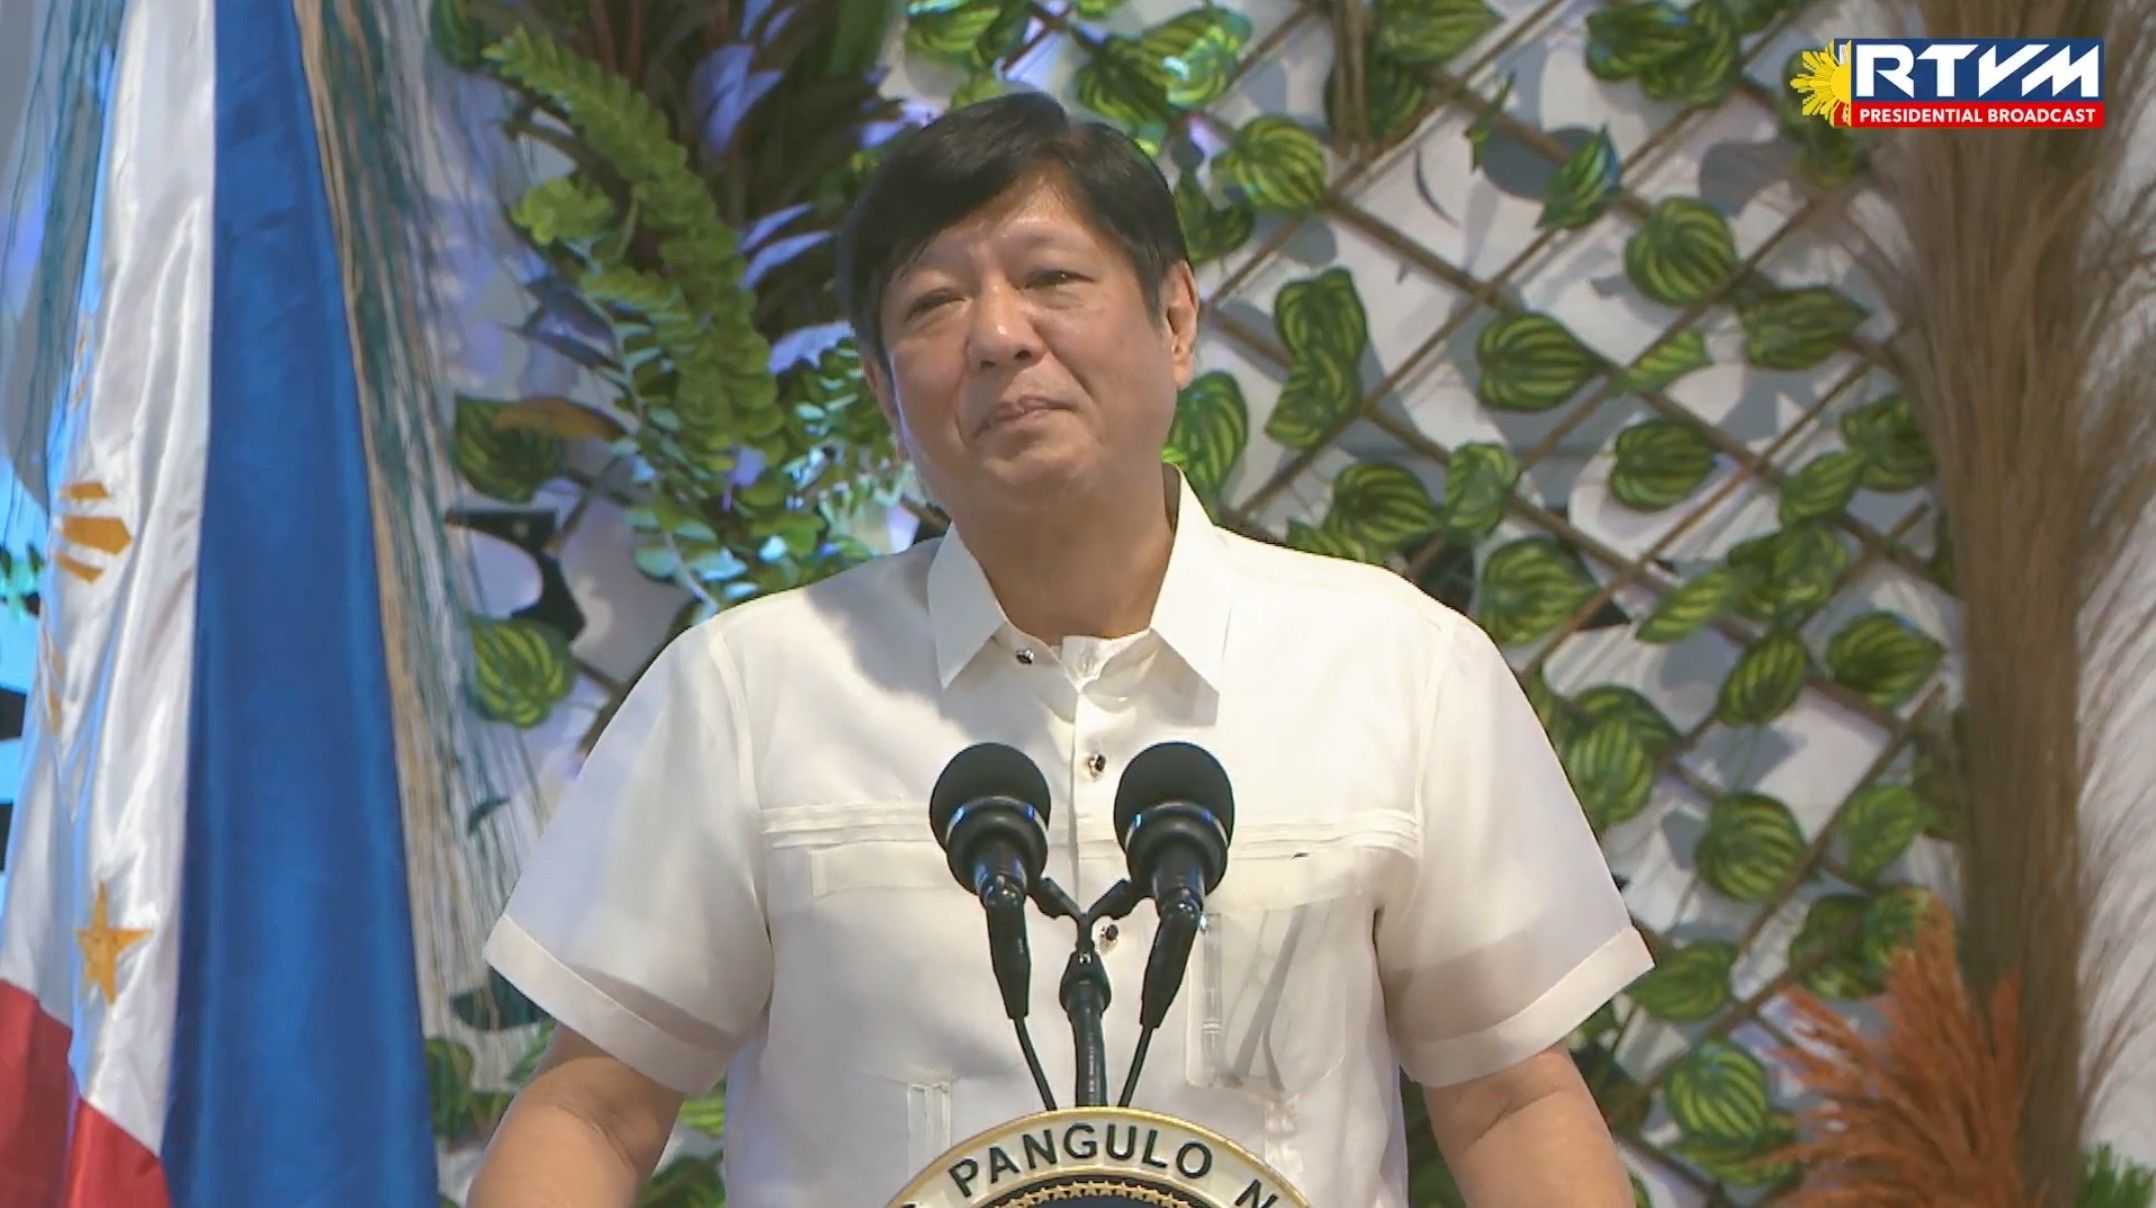 Marcos Jr. berjanji untuk meningkatkan kondisi kerja perawat Filipina